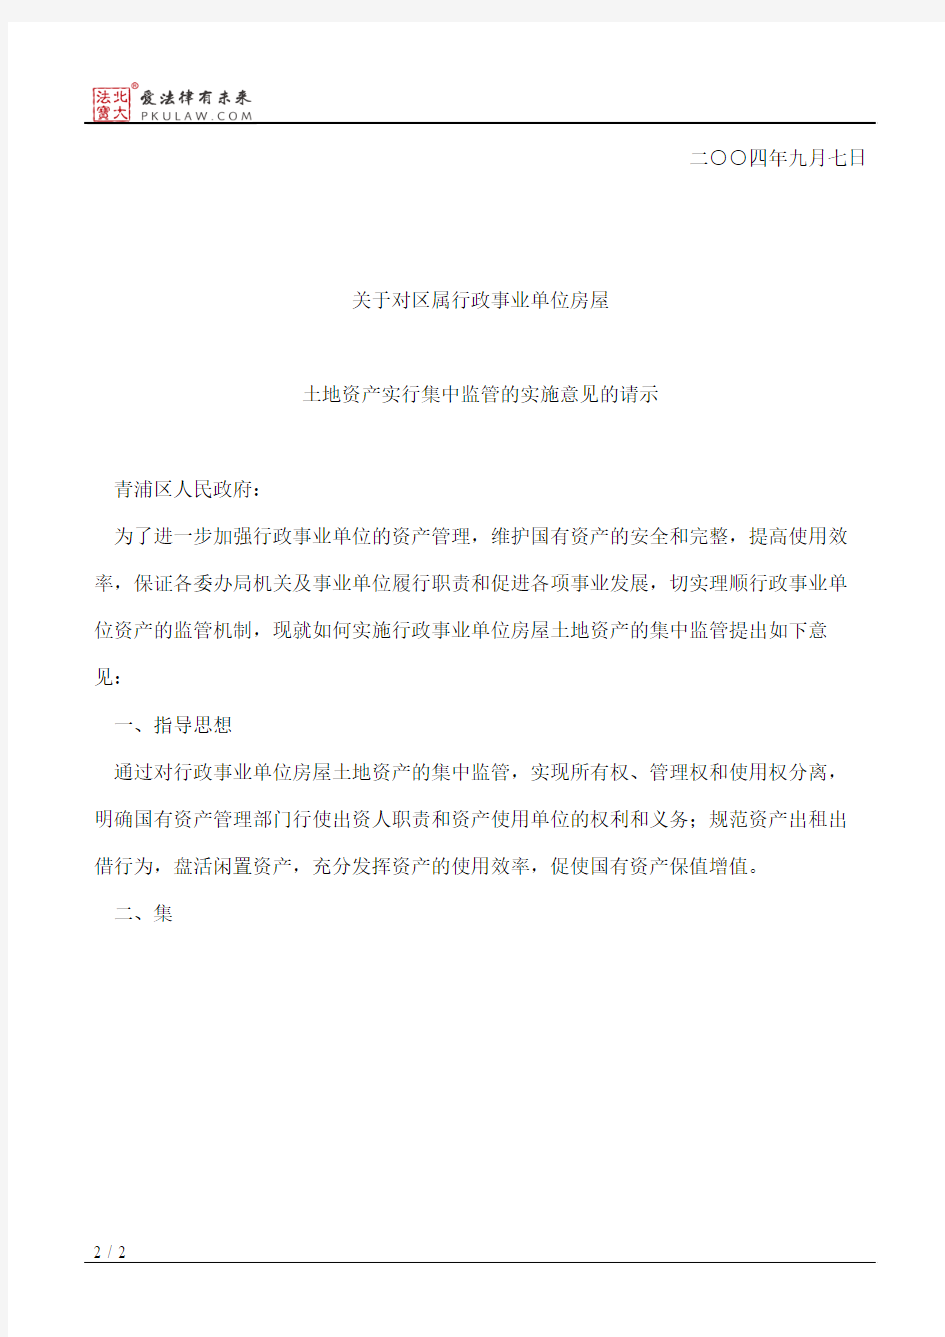 上海市青浦区人民政府批转区国资办等部门关于对区属行政事业单位